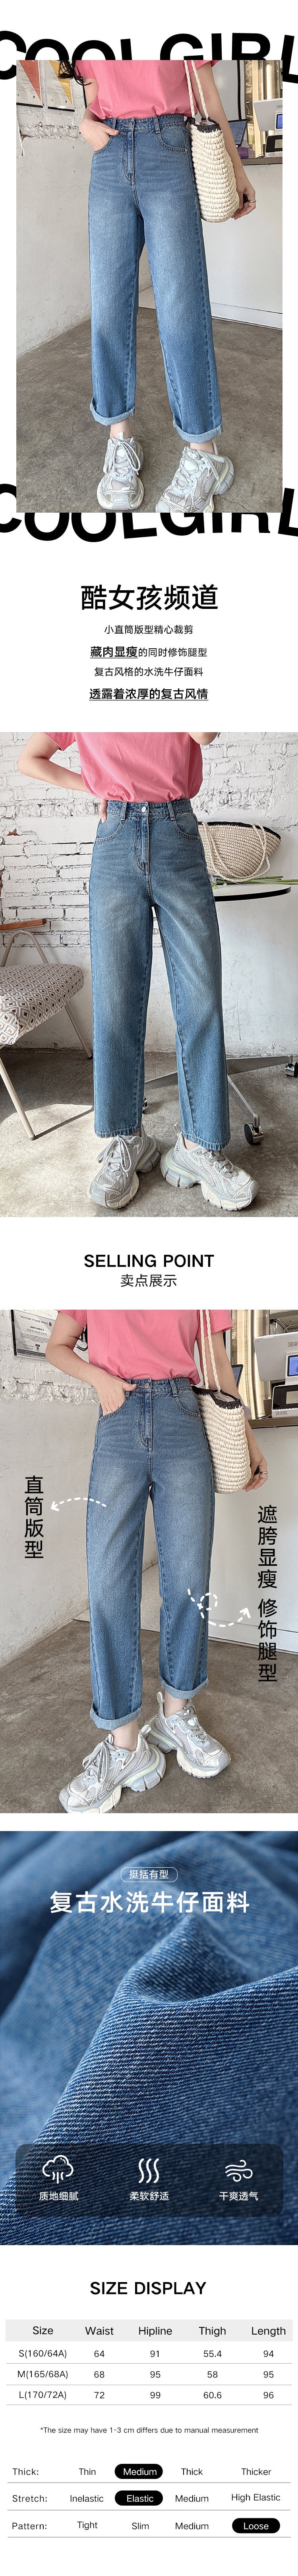 【中国直邮】HSPM 新款简约高腰复古直筒牛仔裤 蓝色 S